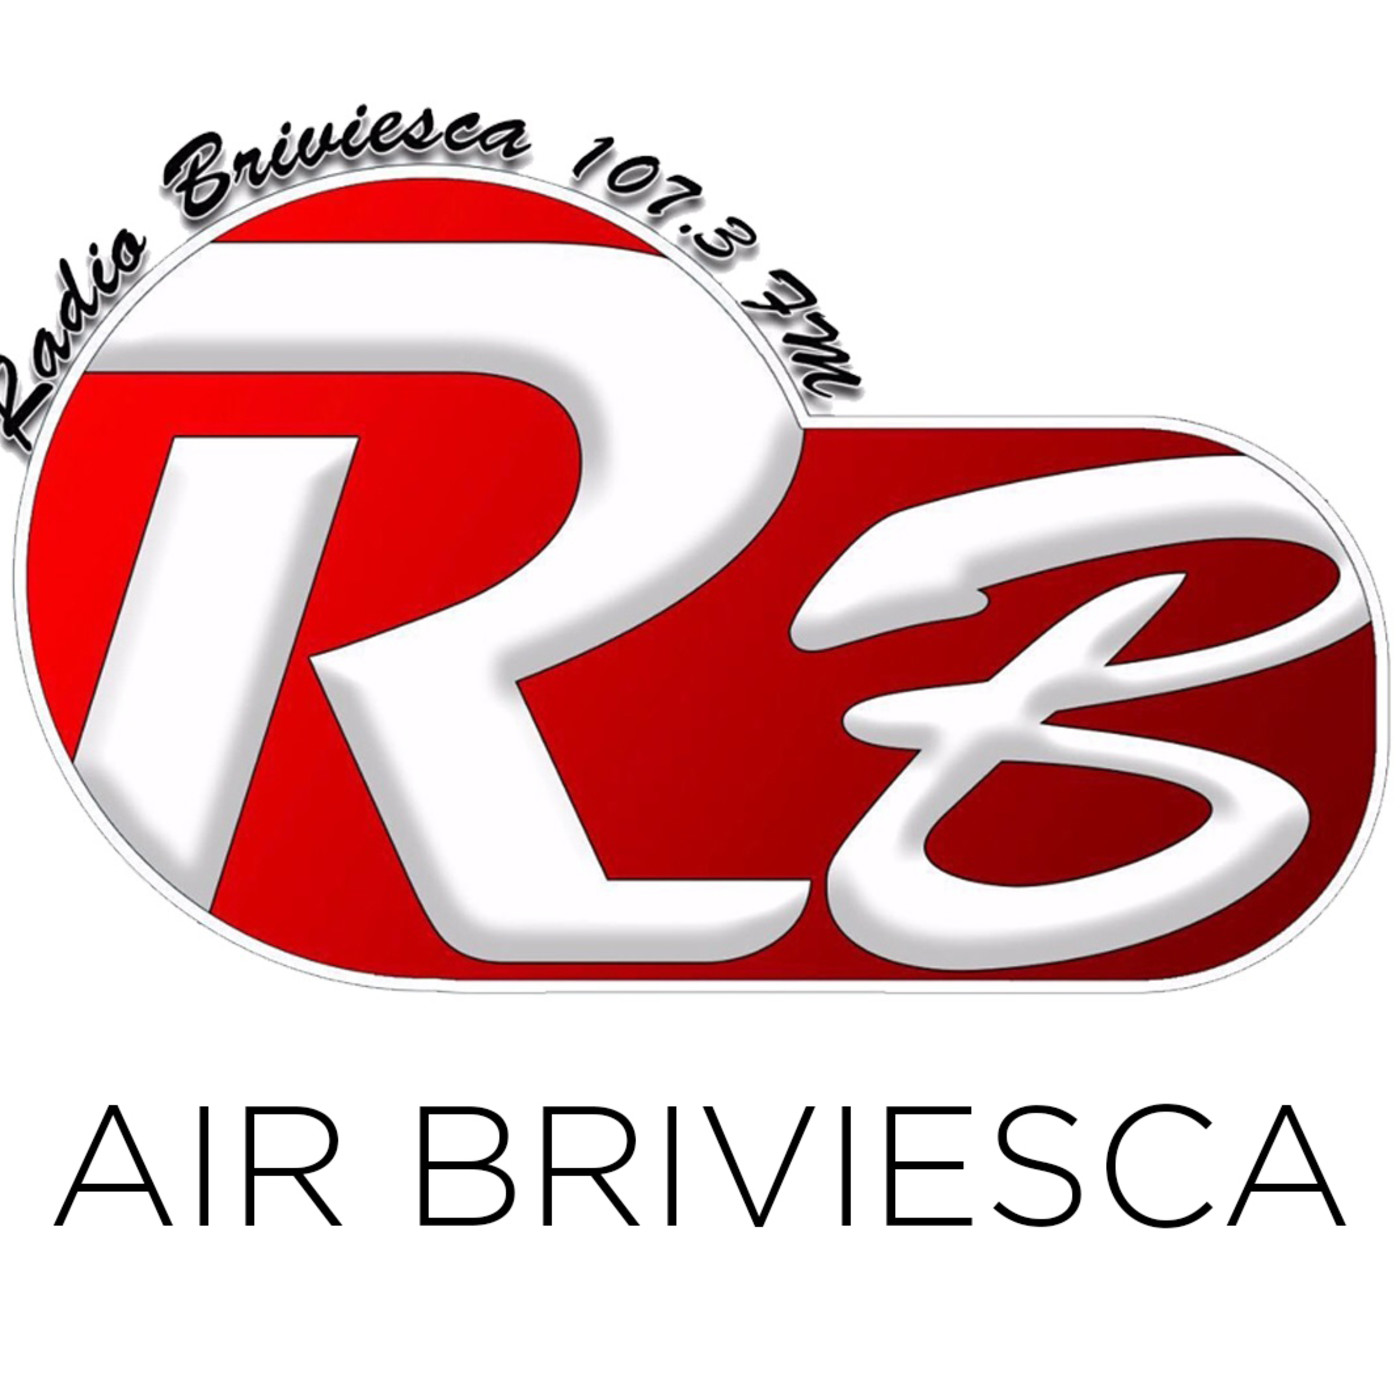 Air Briviesca 04/02/2018 C. Comercio y ACH Bureba